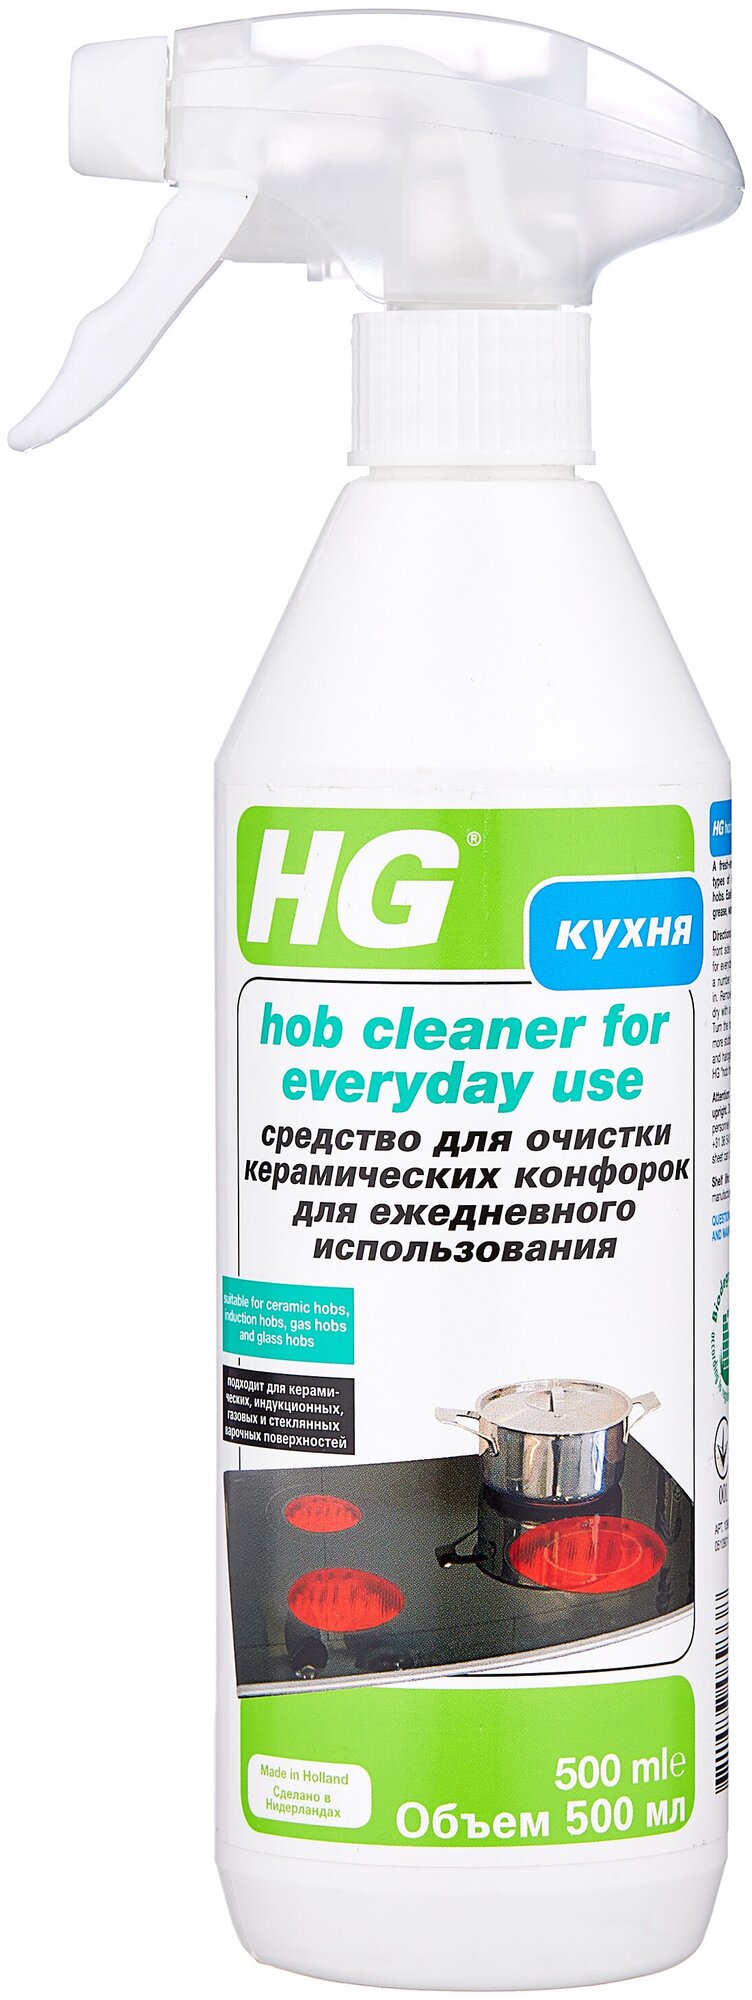 Средство для очистки керамических конфорок для ежедневного использования HG